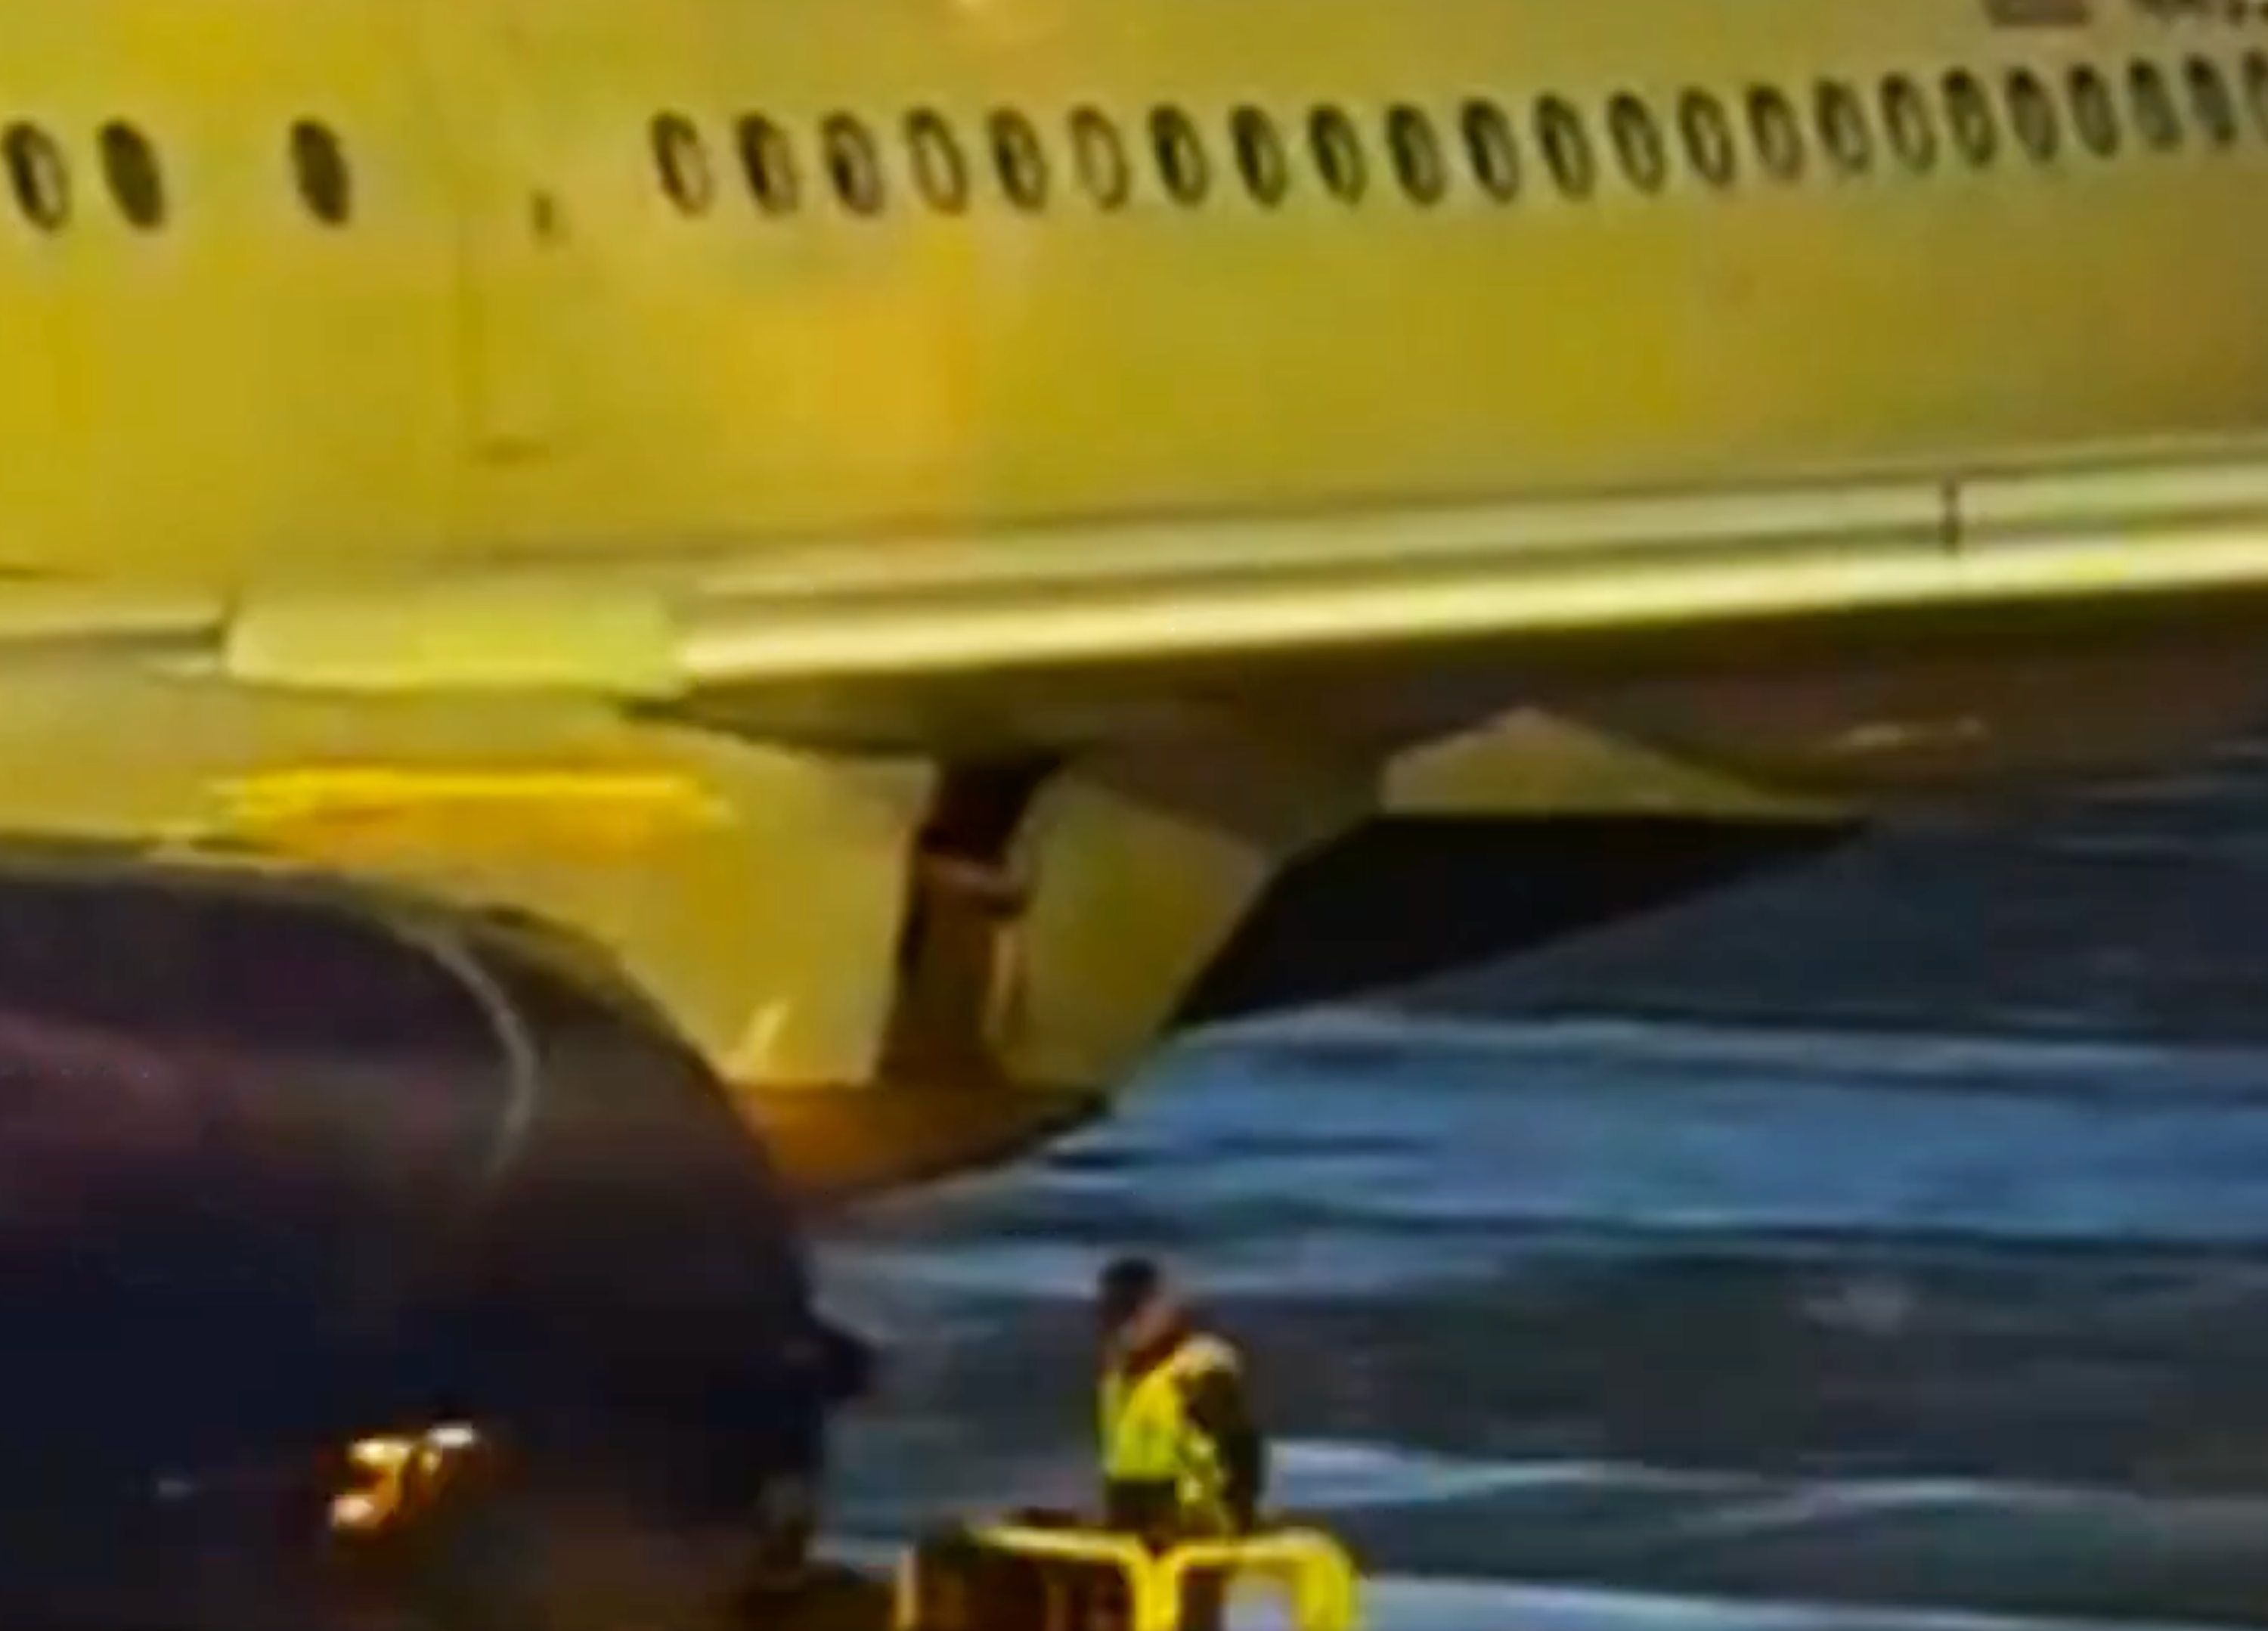 Diesmal Panne bei Airbus - Flugzeug verliert Verkleidung